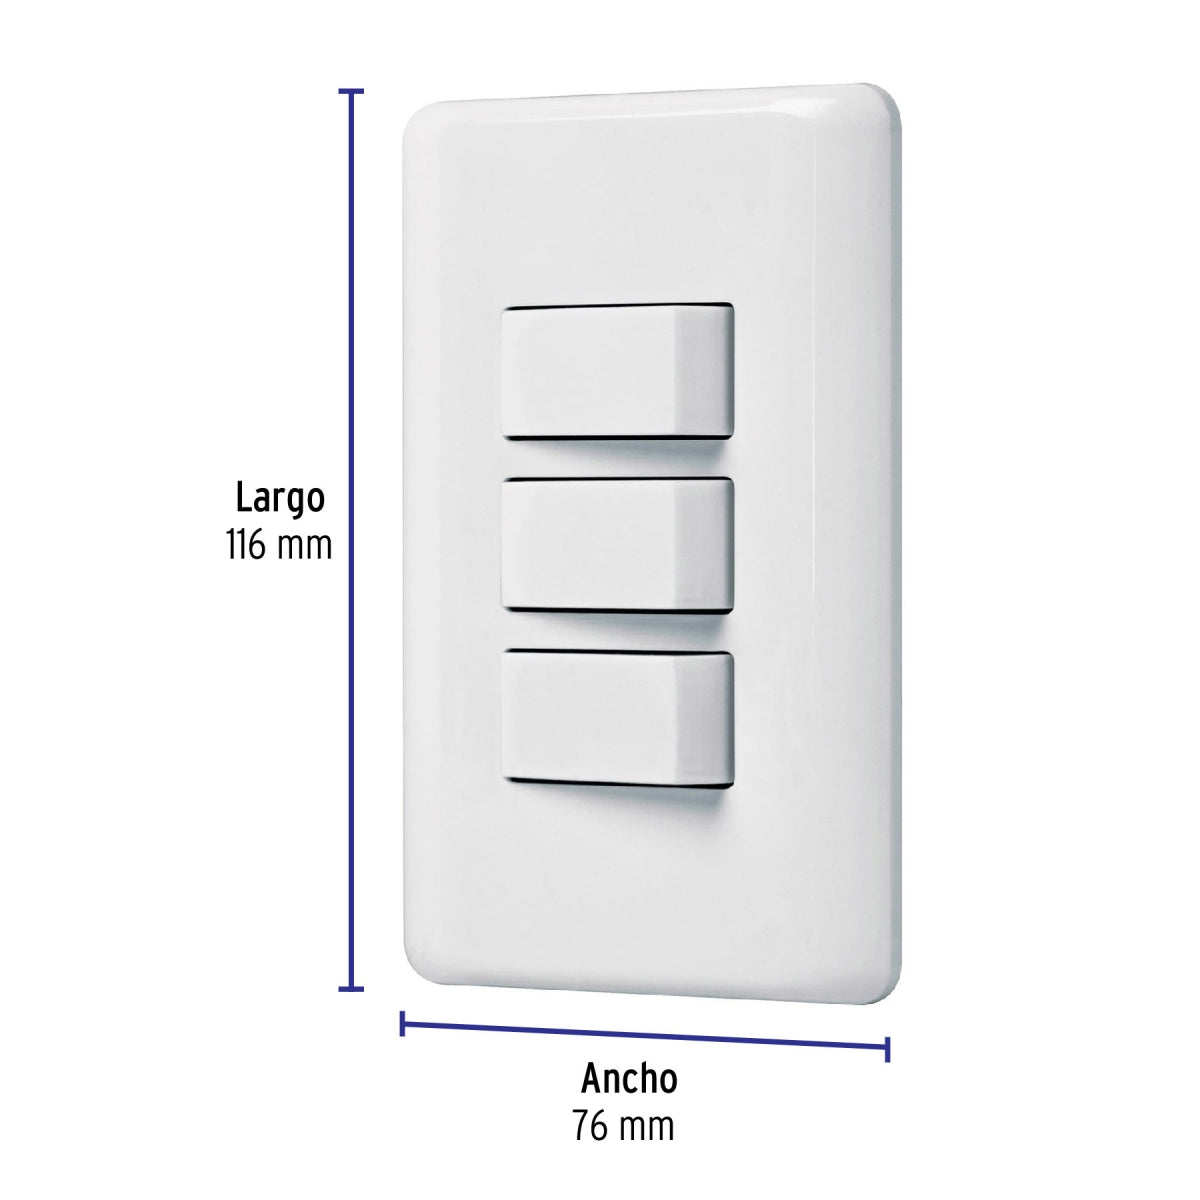 Placa armada triple 3 interruptores sencillos (Basic) SKU:'25083